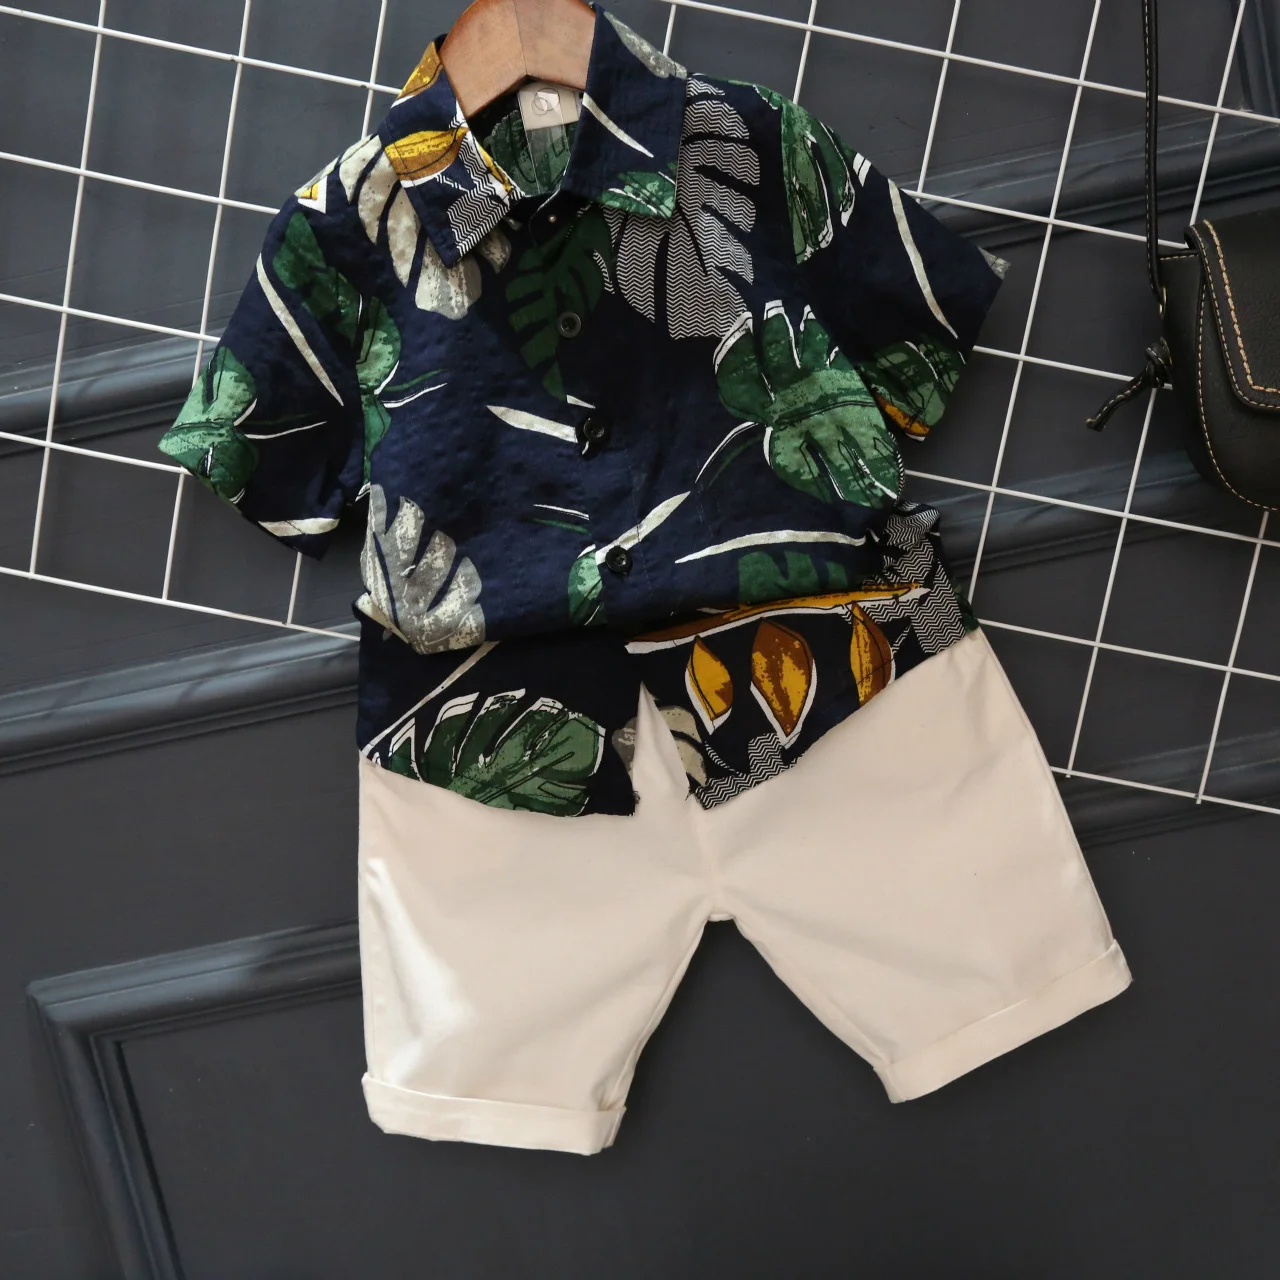 

2PCS WLG boys summer clothing set kids floral printed shirt and khaki short set baby casual clothes